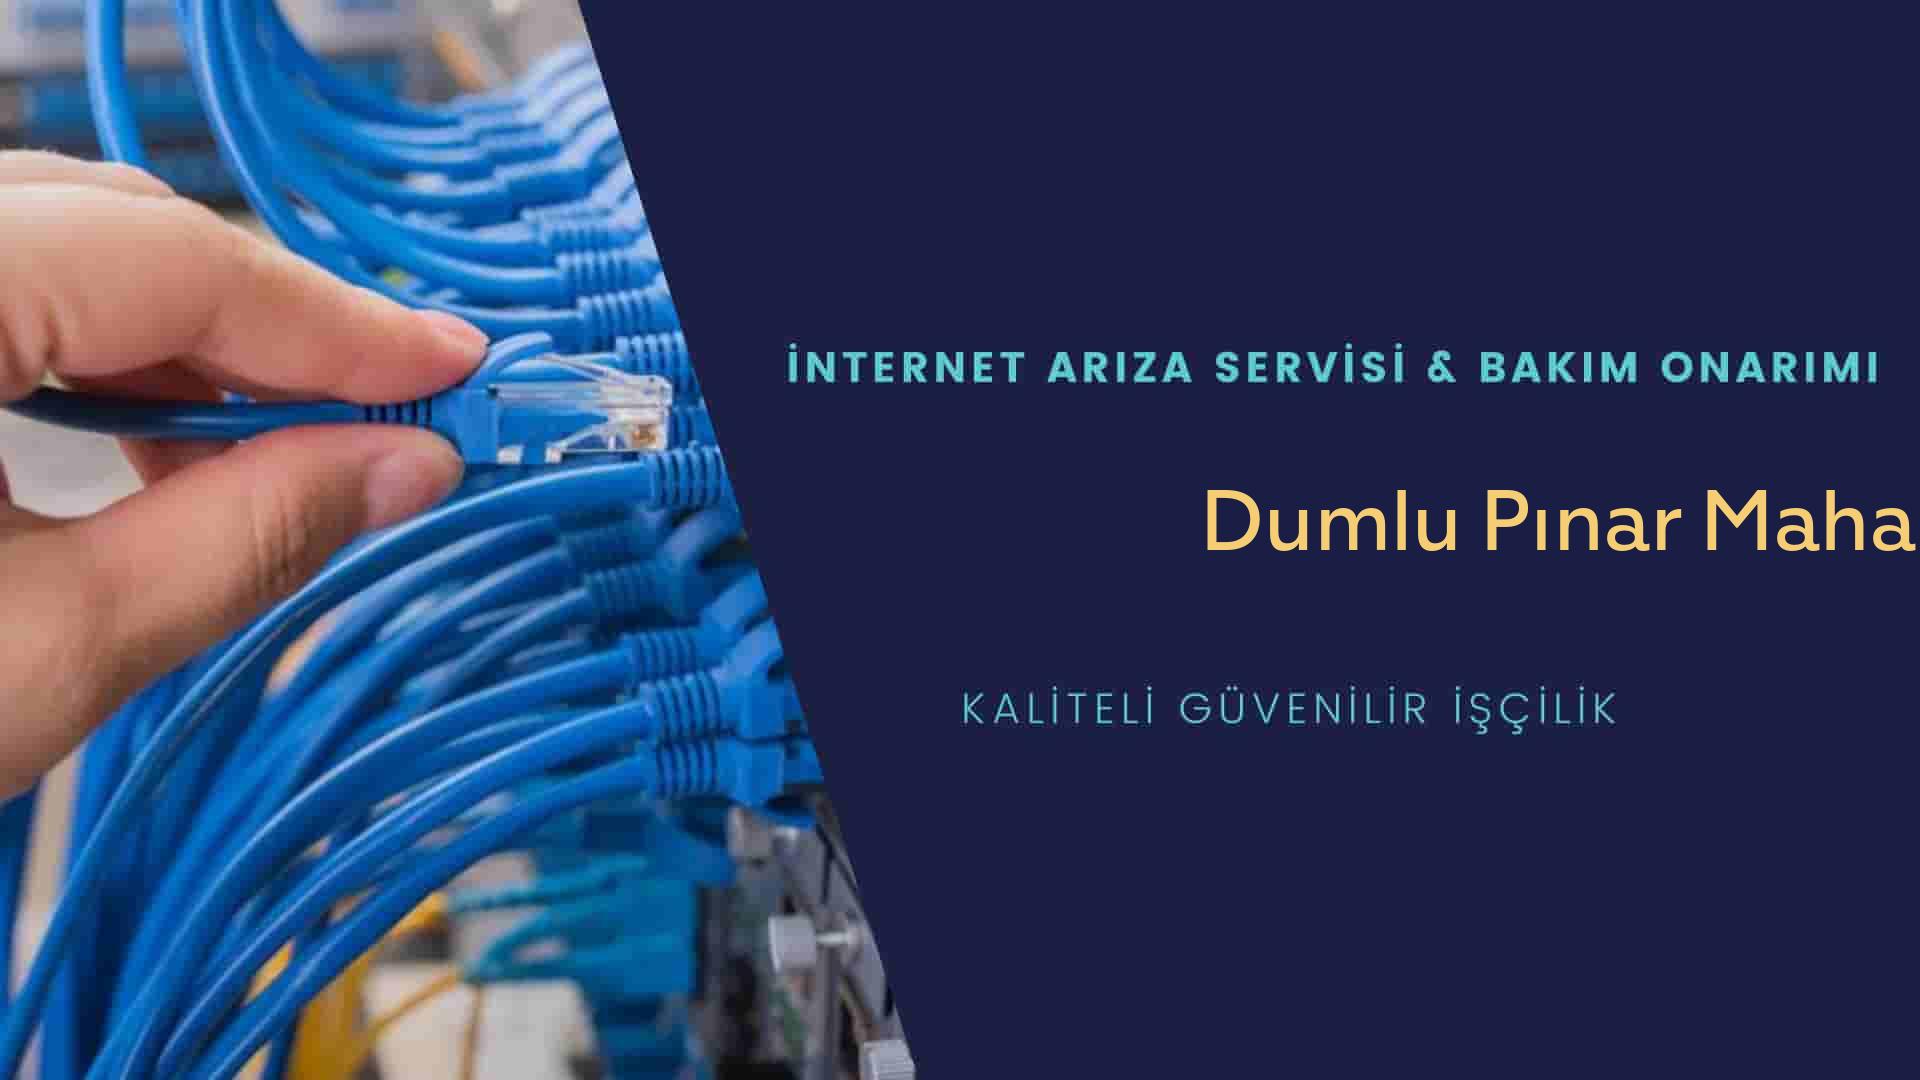 Dumlu Pınar Mahallesi internet kablosu çekimi yapan yerler veya elektrikçiler mi? arıyorsunuz doğru yerdesiniz o zaman sizlere 7/24 yardımcı olacak profesyonel ustalarımız bir telefon kadar yakındır size.